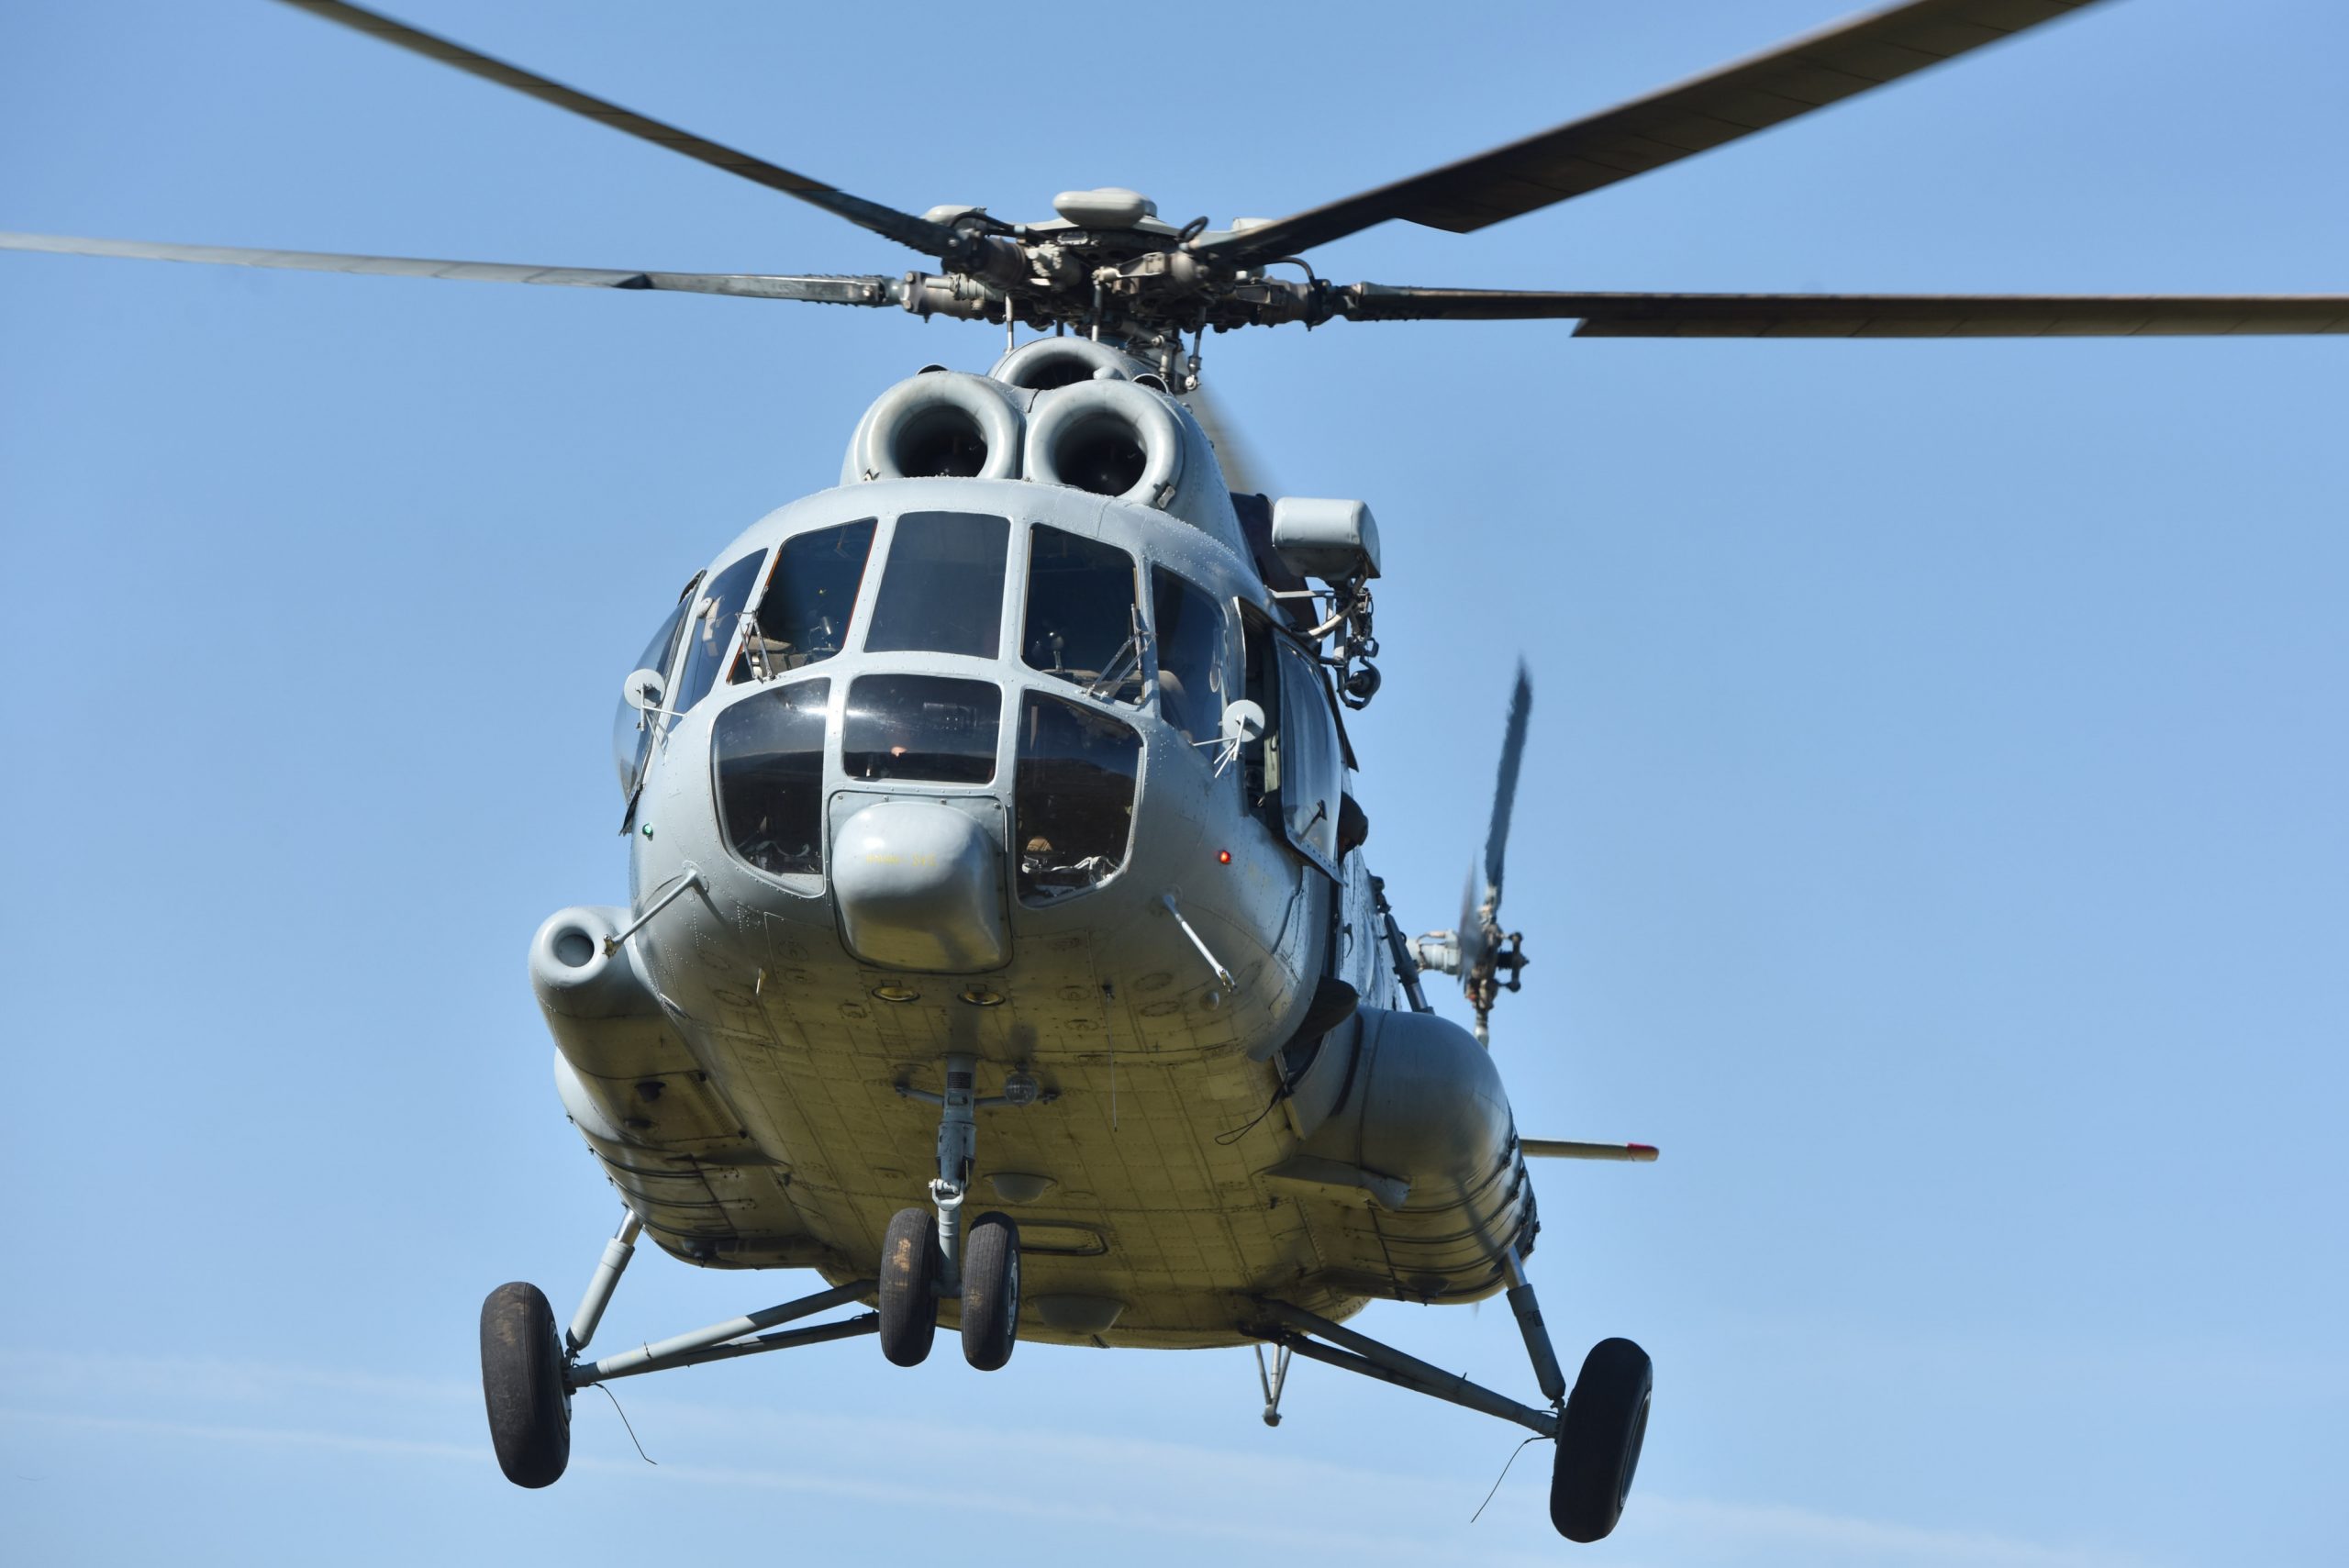 04.08.2019., Kijevo - Helikopter Hrvatske vojske MI-8.
Photo: Hrvoje Jelavic/PIXSELL